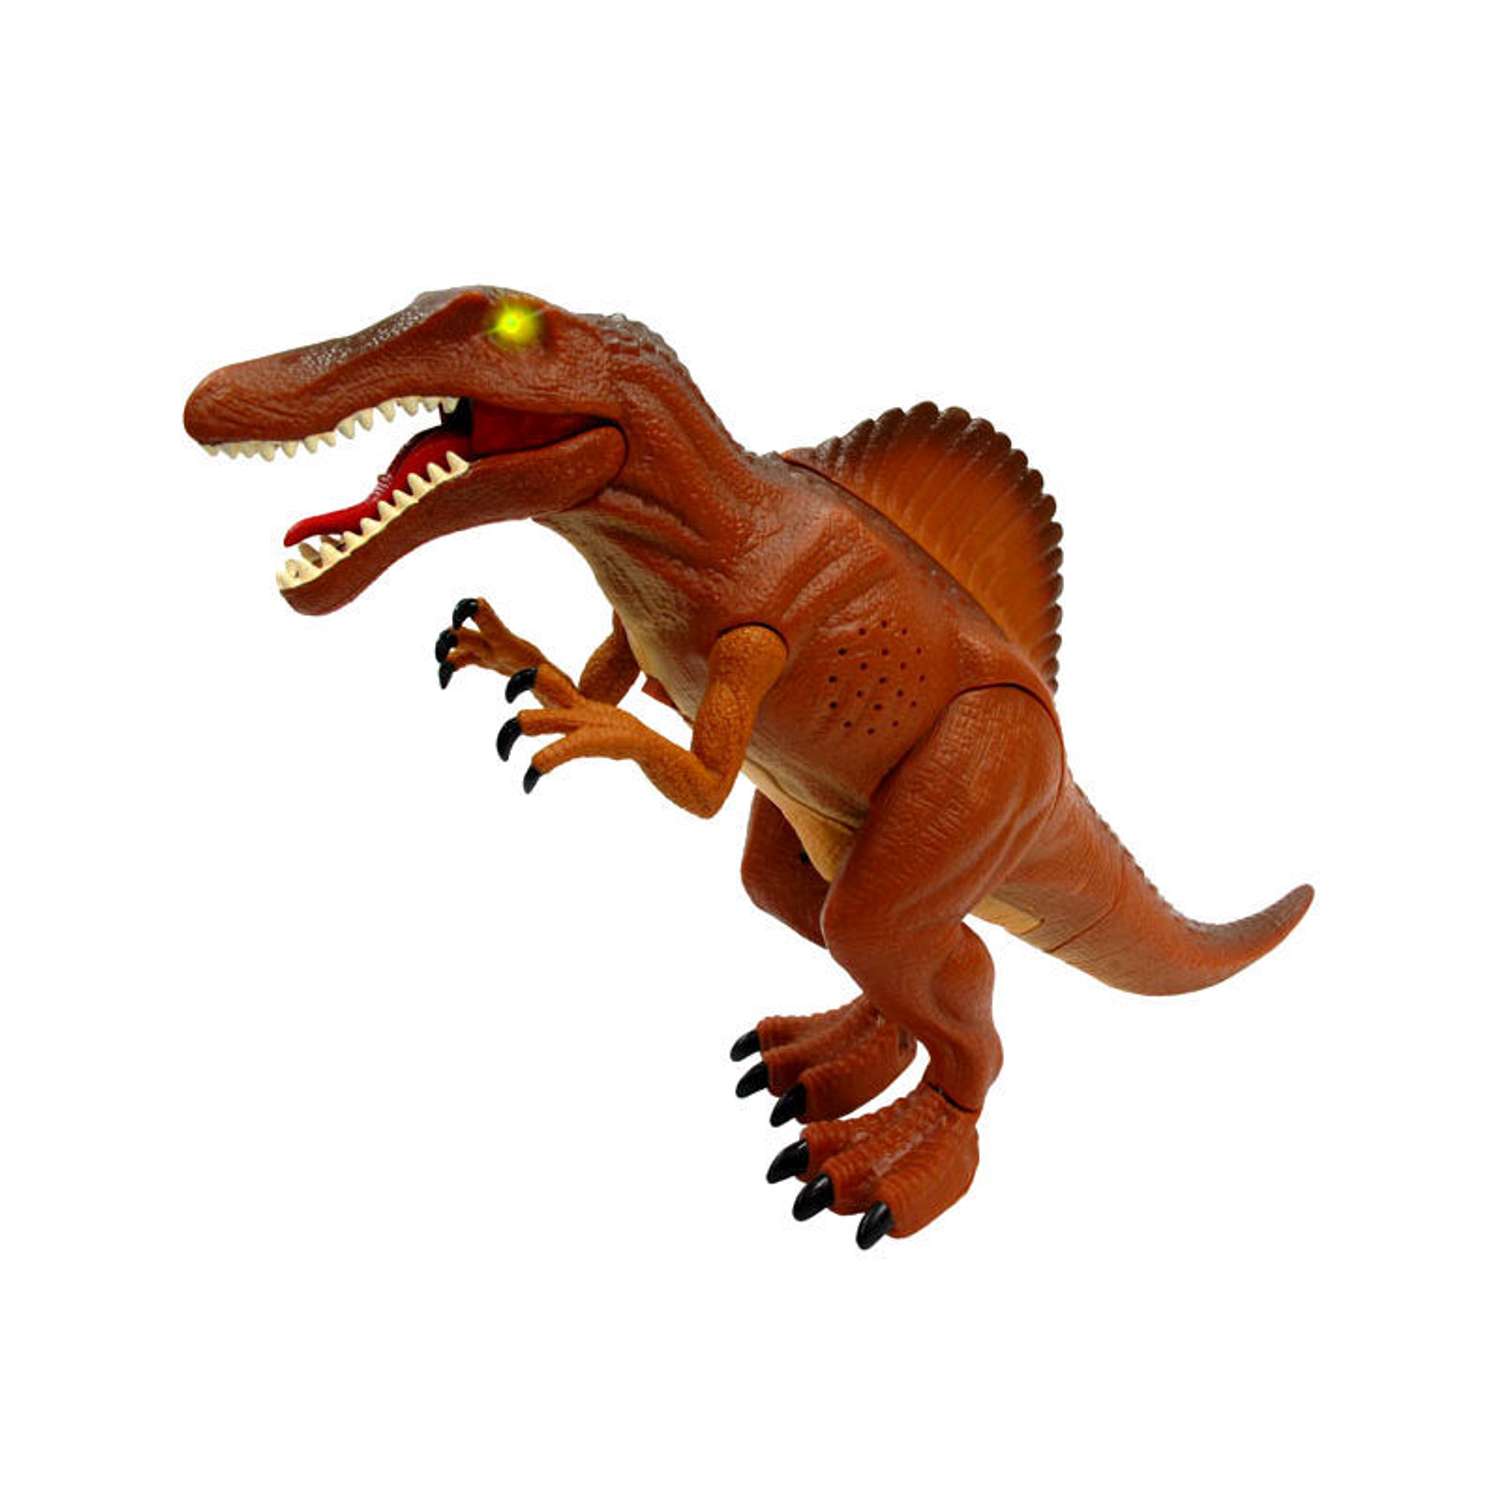 Спинозавр Dragon интерактивный - фото 1